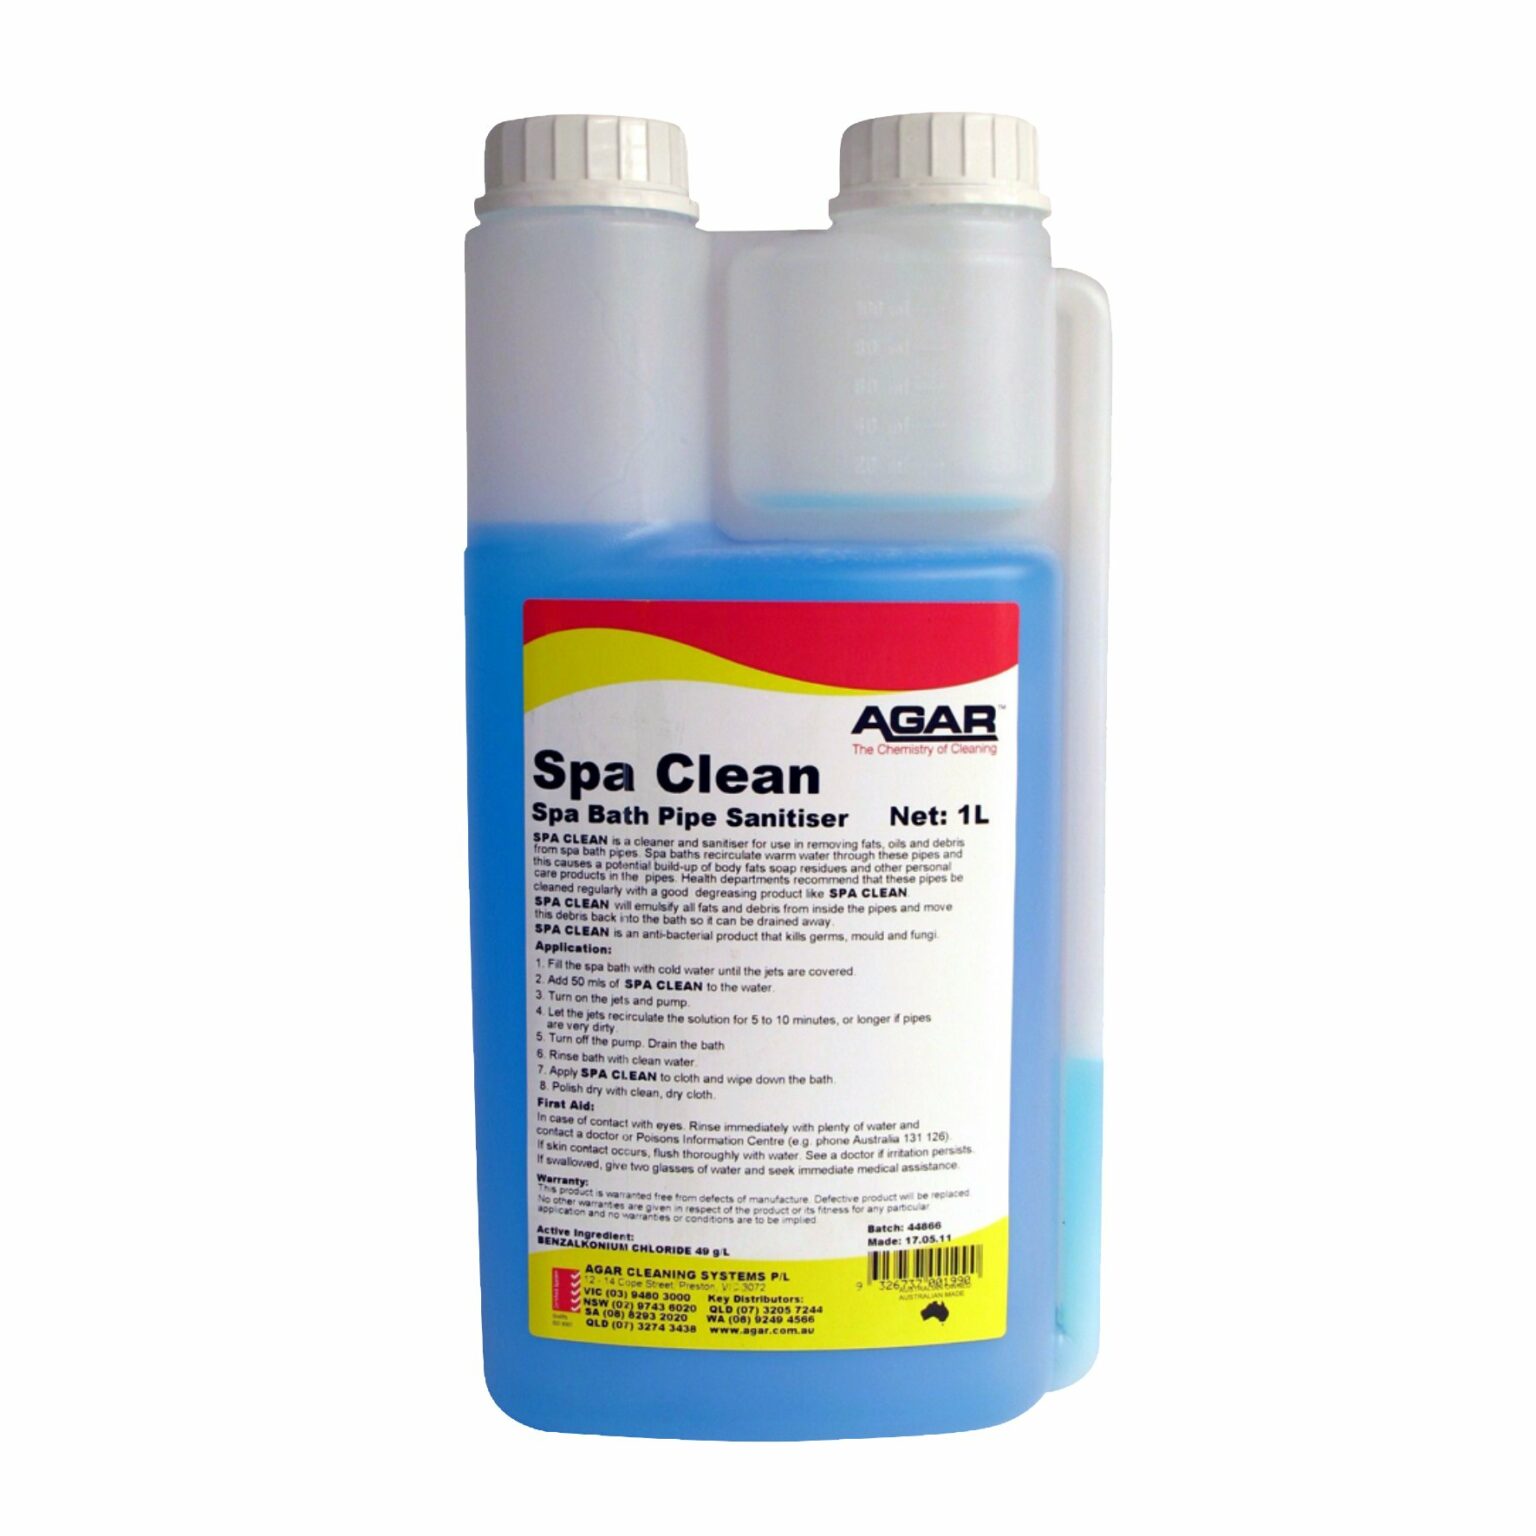 Agar Spa Clean Spa Bath Pipe Sanitiser, 1L